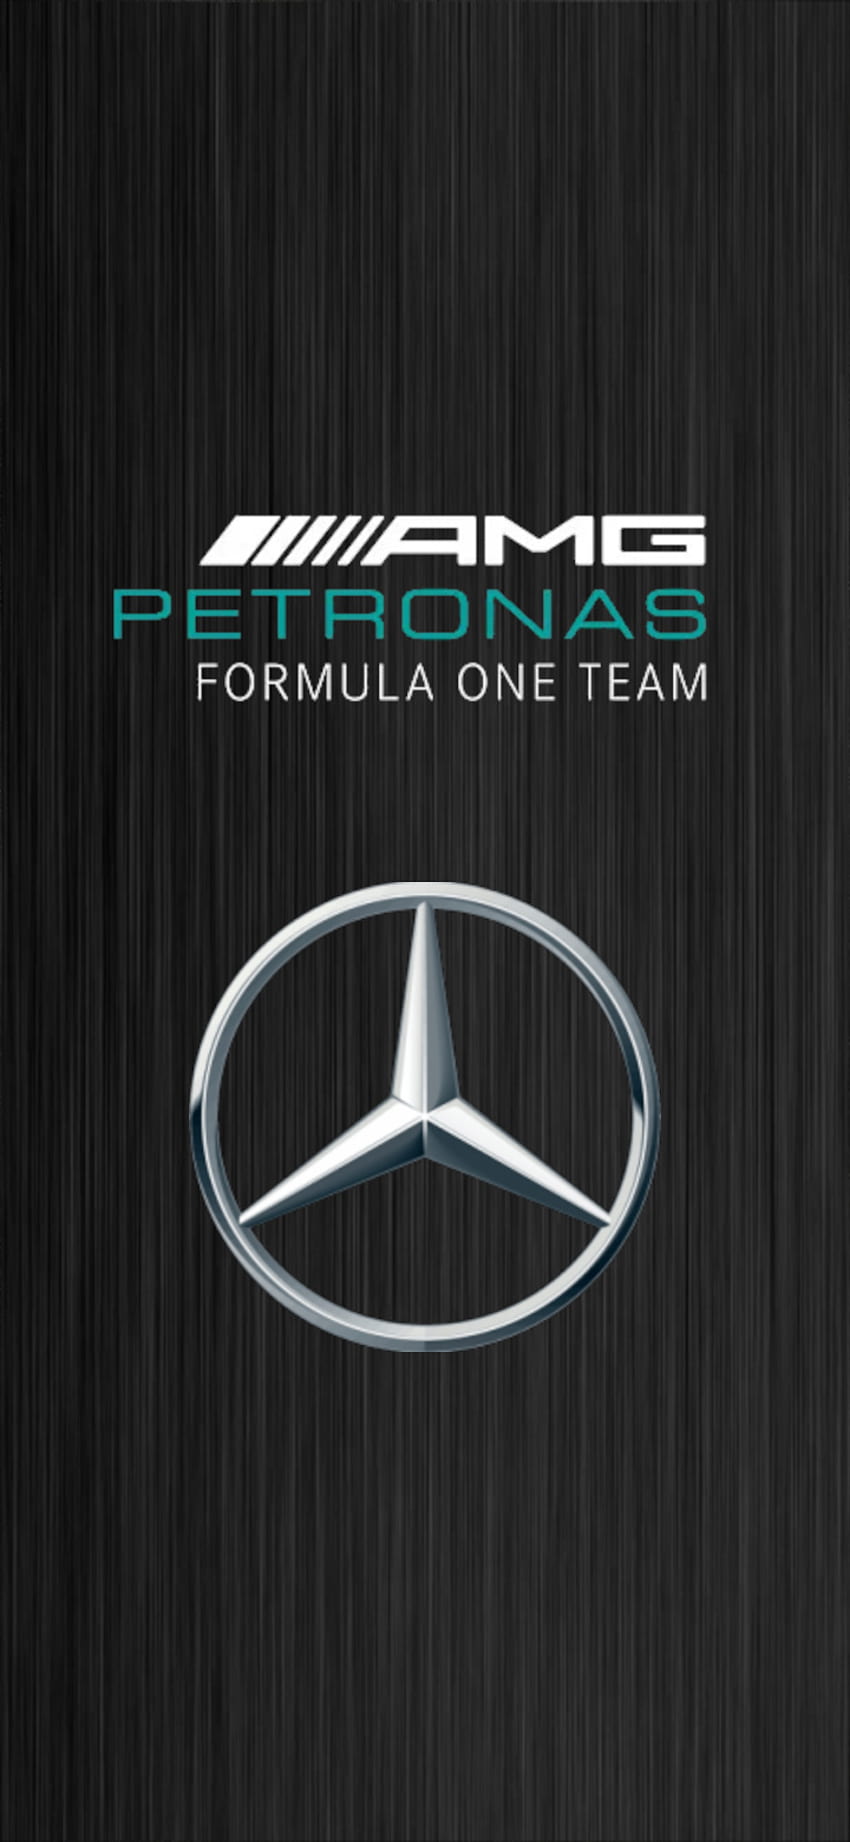 Mercedes F1 Team, LewisHamilton, Fórmula Uno, Petronas, TotoWolf, Lewis, AMG, Automoción, Logotipo fondo de pantalla del teléfono